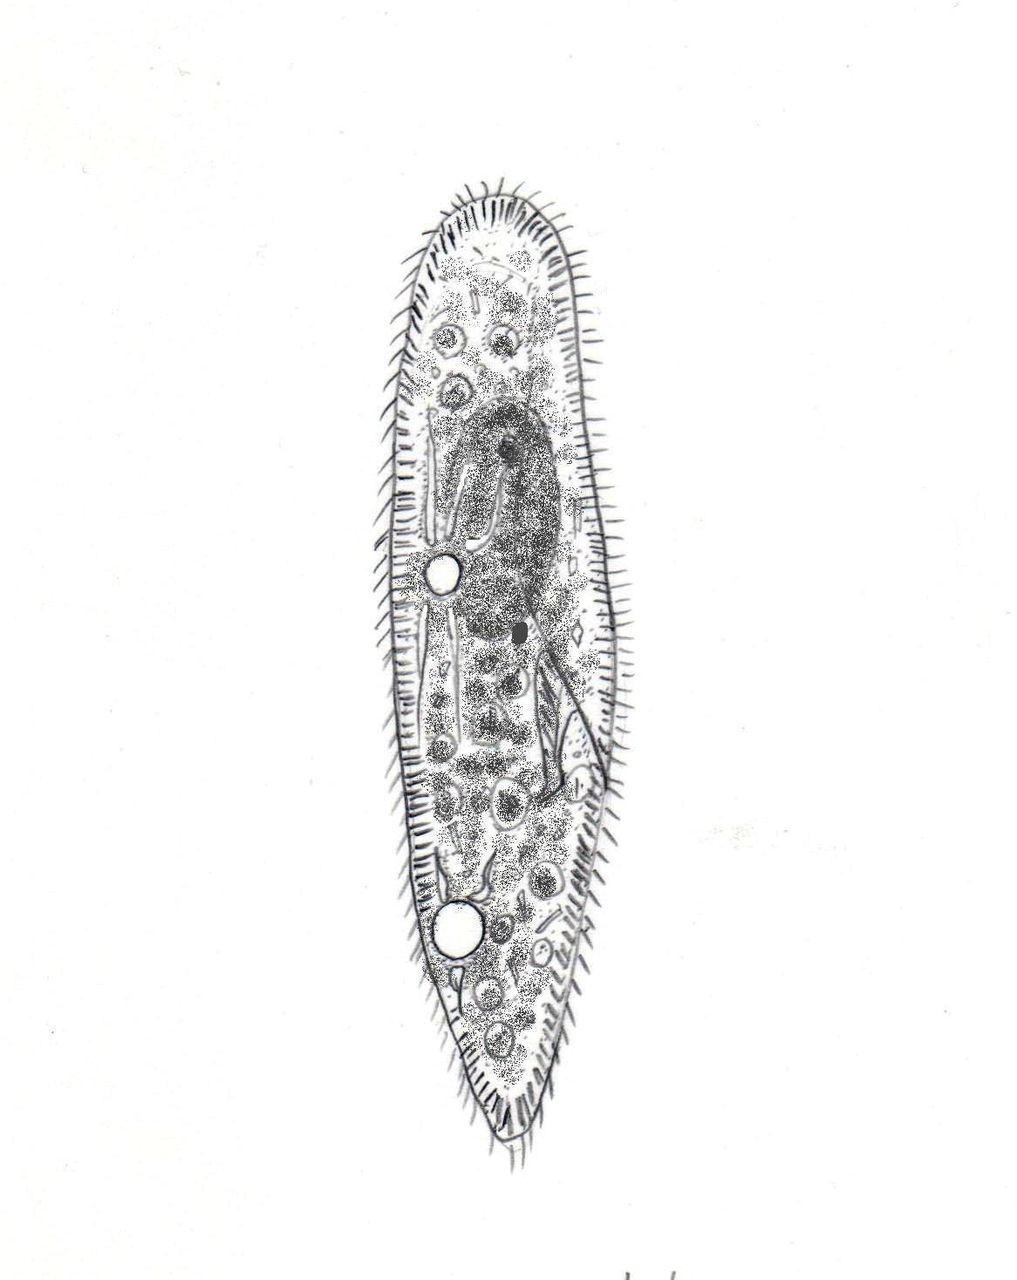 Paramecium Caudatum ゾウリムシ 滴虫界 Infusorian World Ciliates Amoebae Flagellates ｅｔｃ